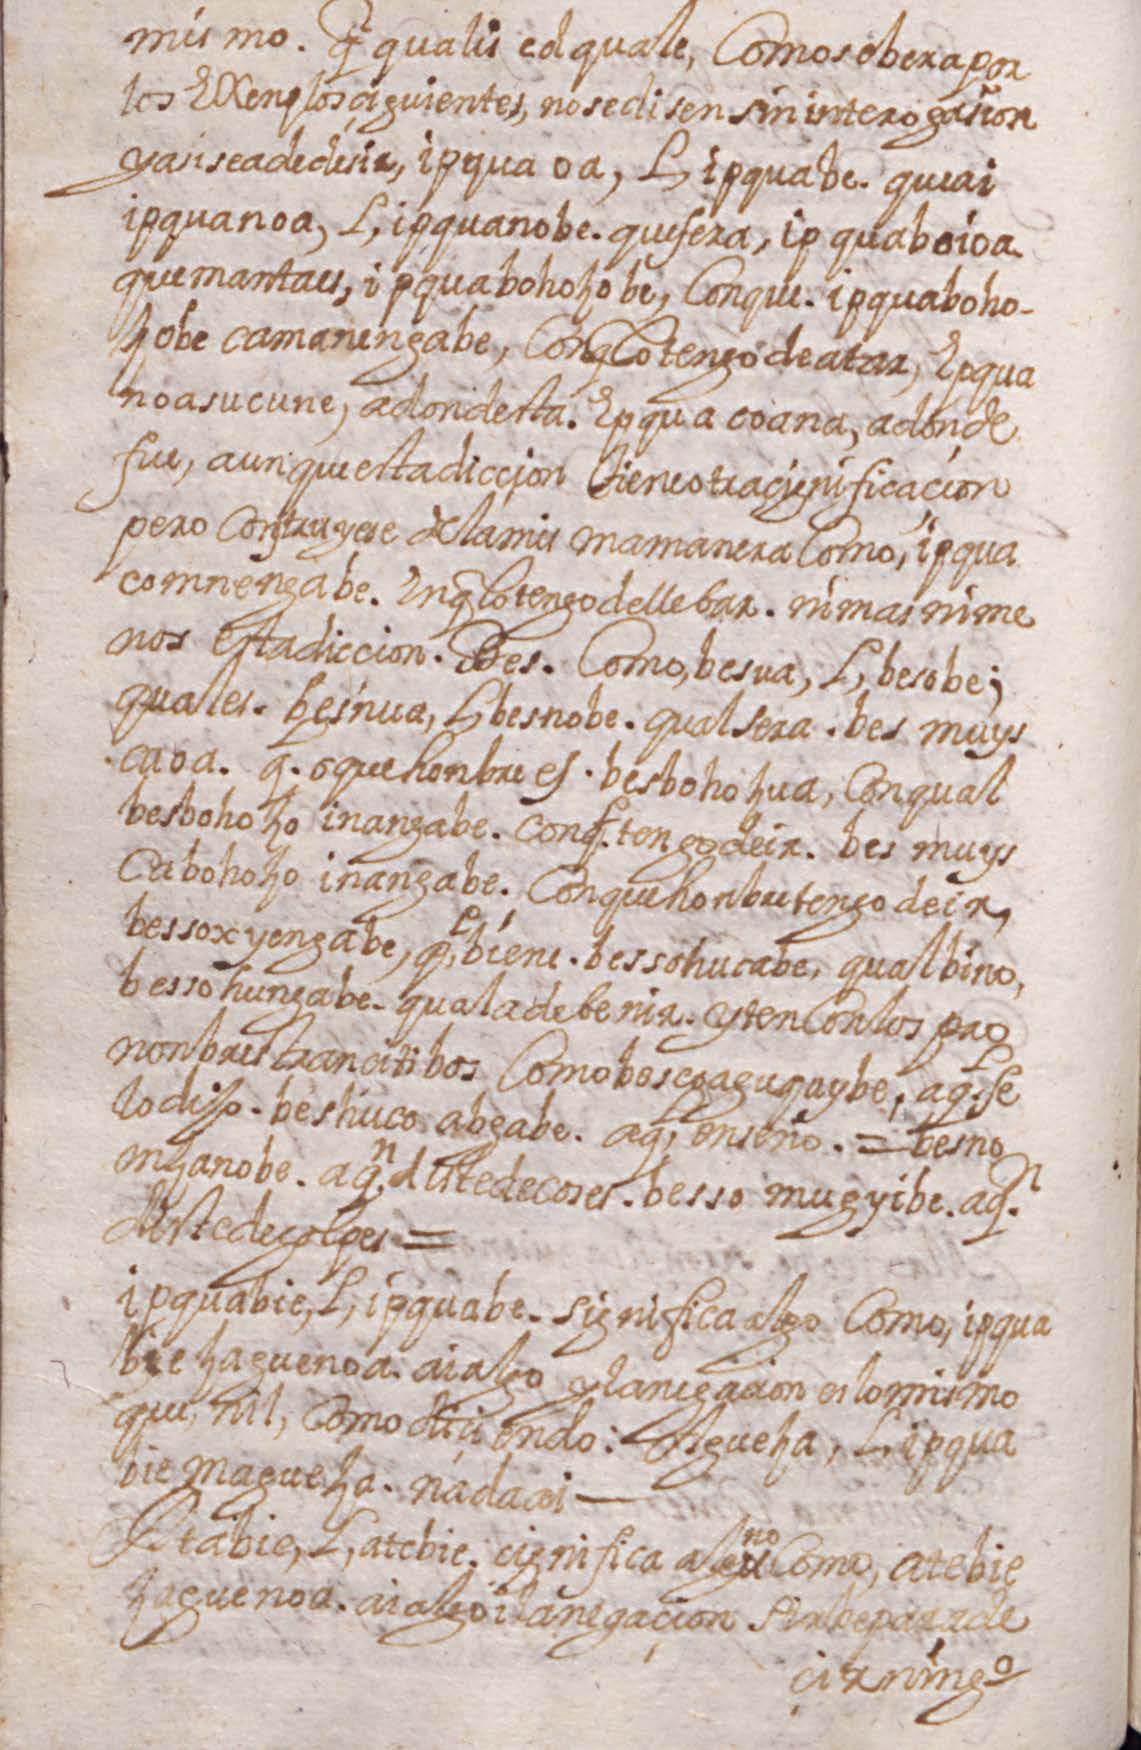 Manuscrito 158 BNC Modos - fol 4v.jpg